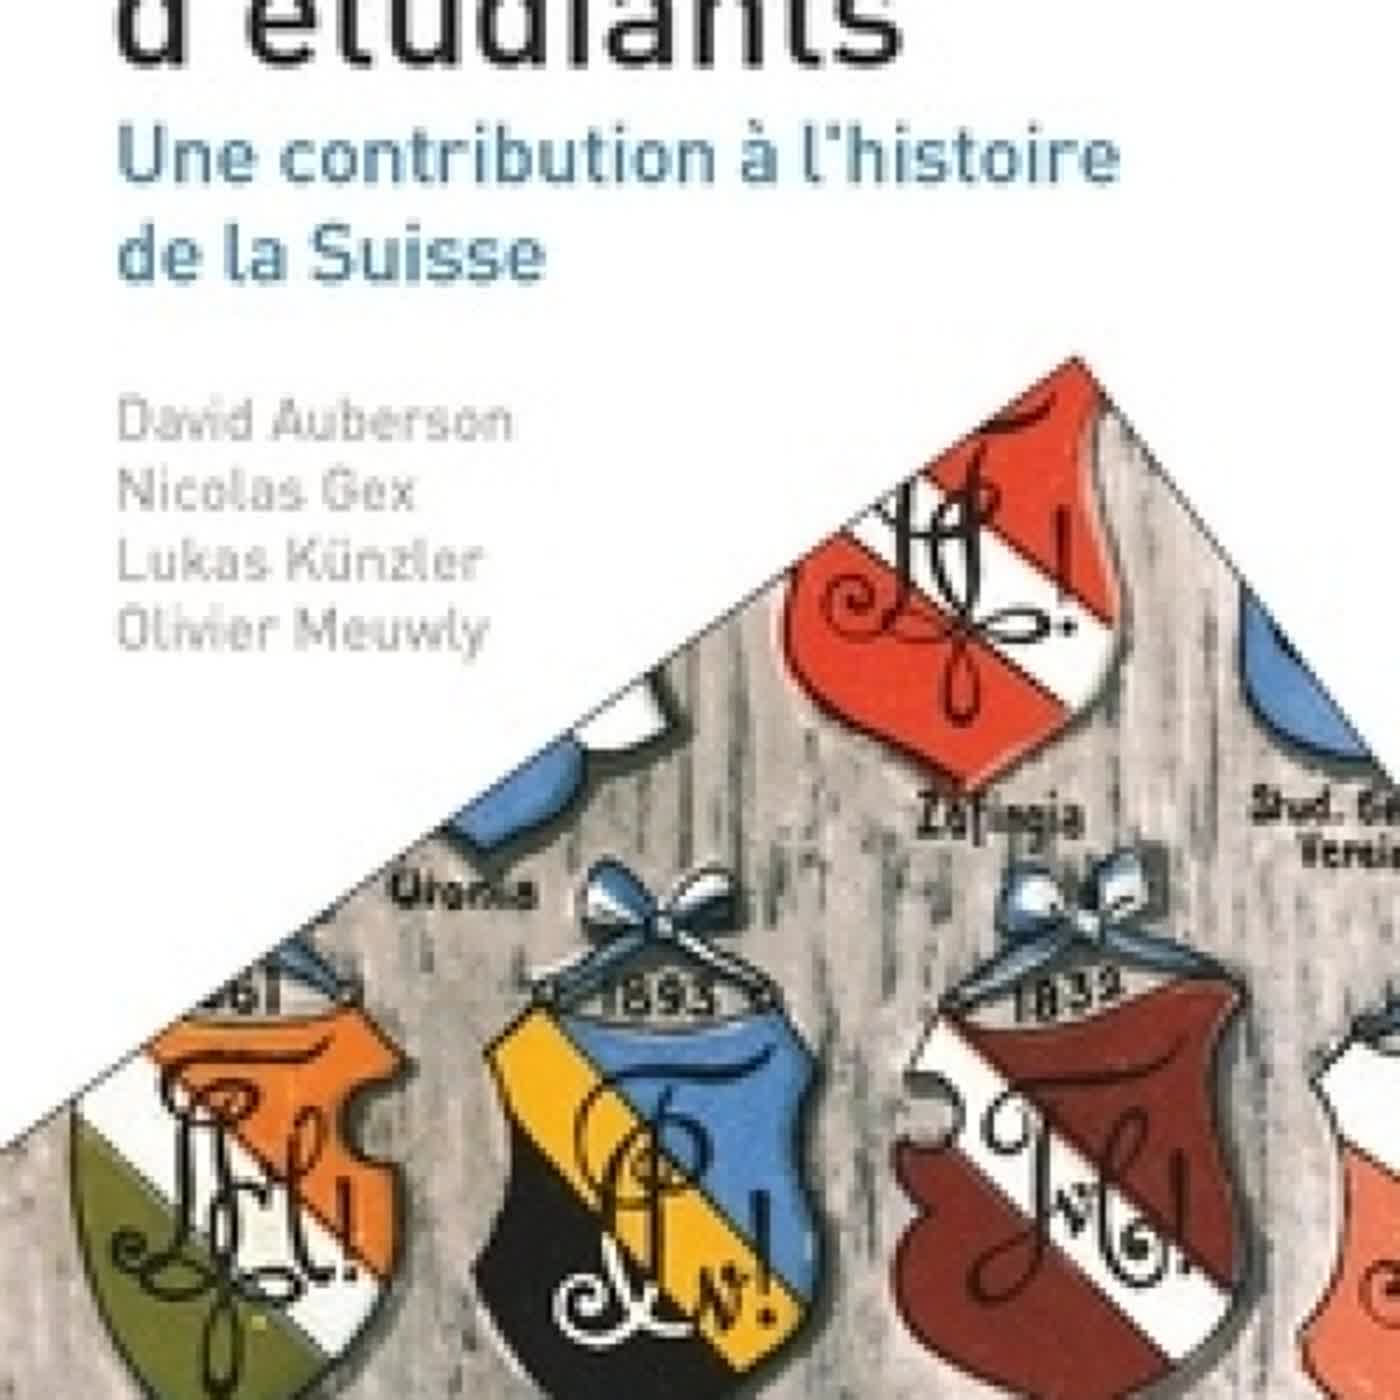 {pdf download} Les sociétés d'étudiants  - Une contribution à l'histoire de la Suisse